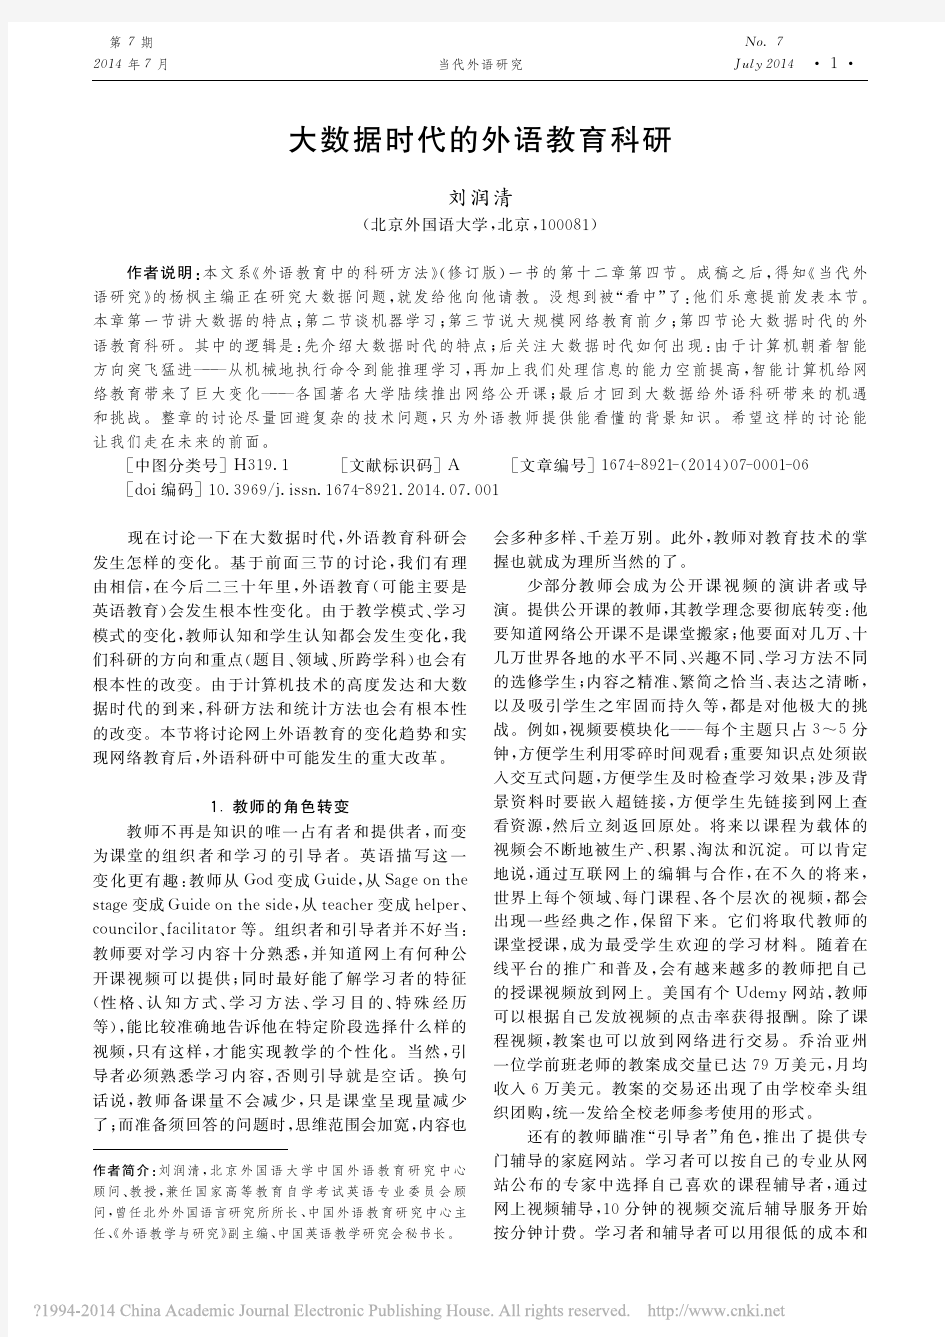 大数据时代的外语教育科研_刘润清